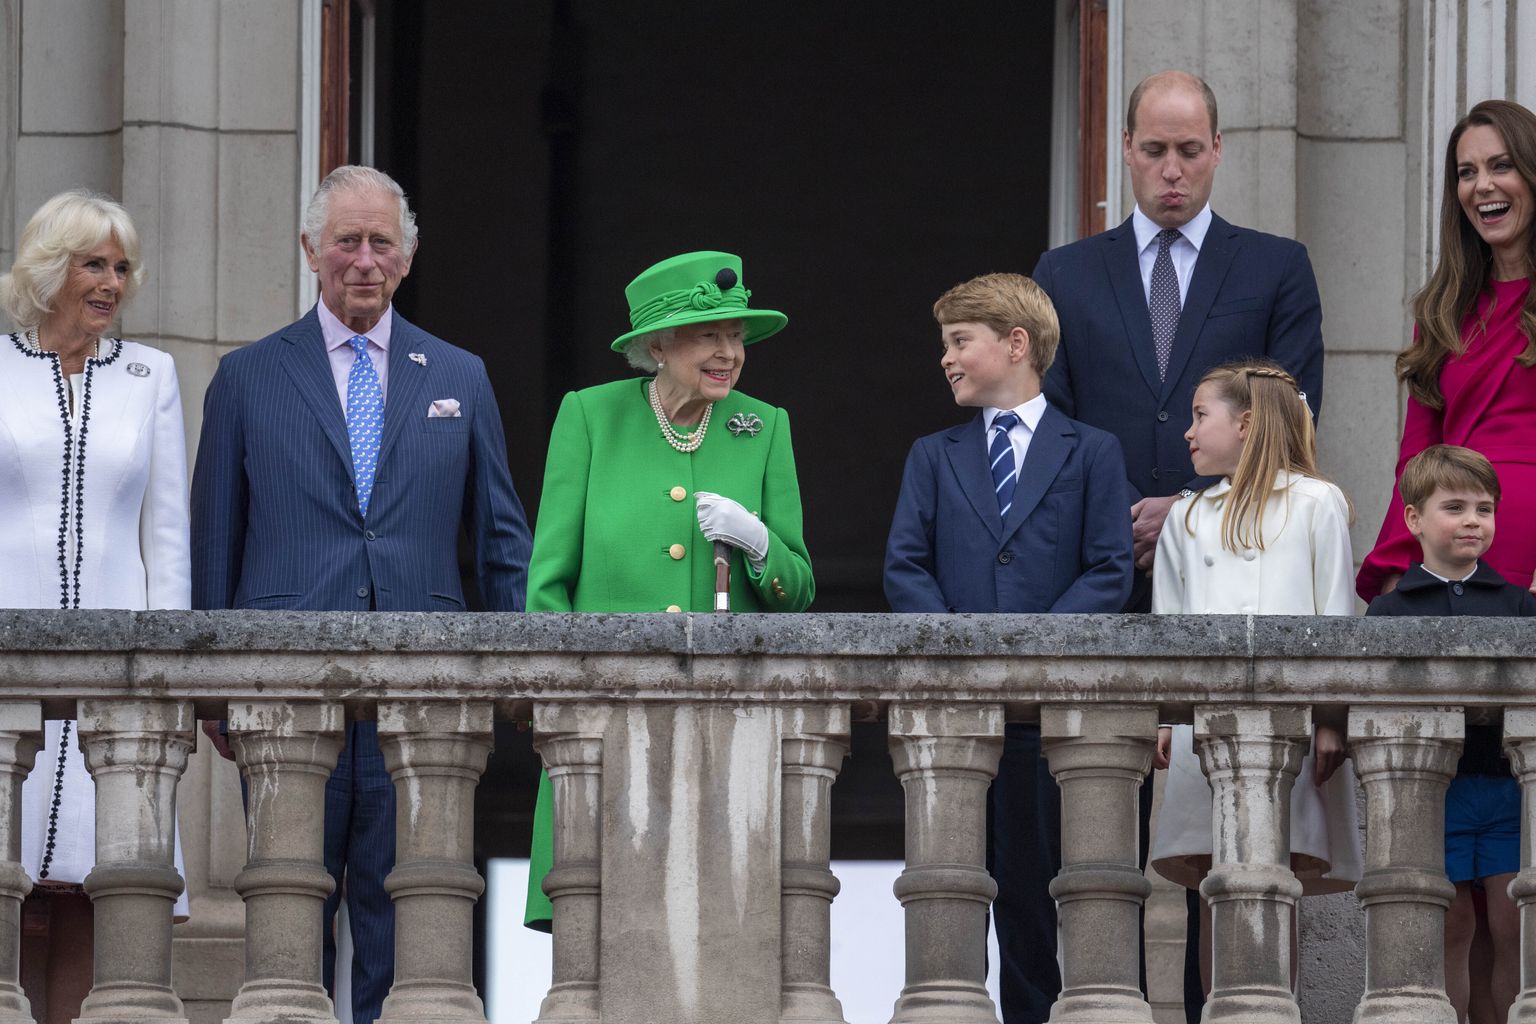 Briti kuninganna Elizabeth II ja ta pereliikmed 5. juunil 2022 Londonis Buckinghami palee rõdul- Vasakult: Cornwalli hertsoginna  Camilla, prints Charles, kuninganna Elizabeth II, prints George, prints William, printsess Charlotte, prints Louis ja Cambridge'i hertsoginna Catherine